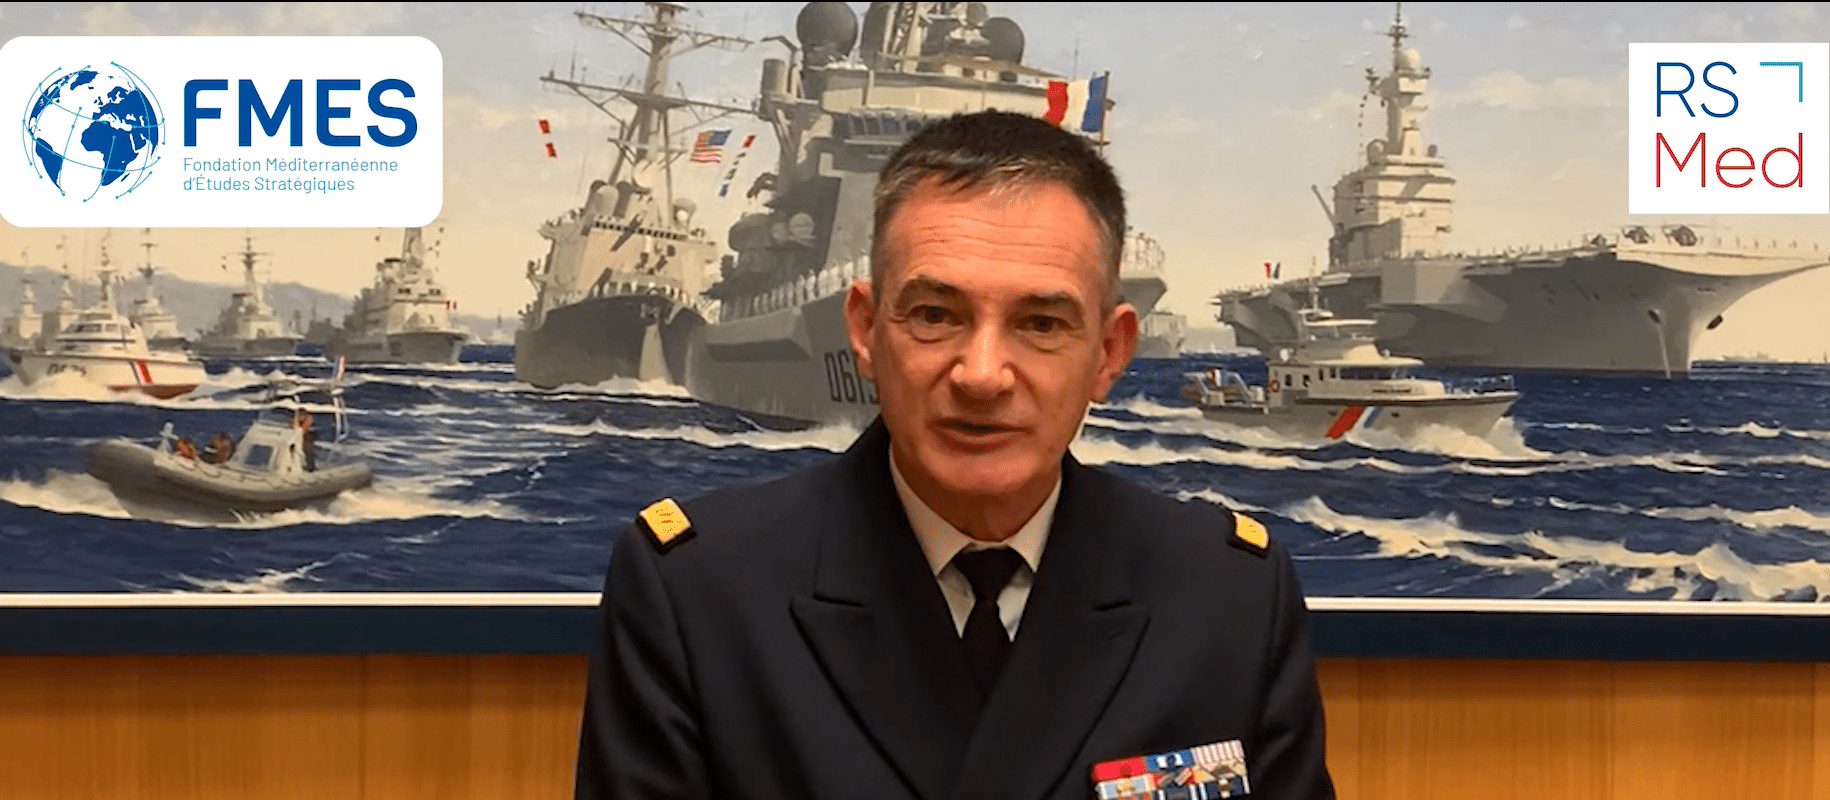 Le regard du préfet maritime de la Méditerranée sur les RSMed